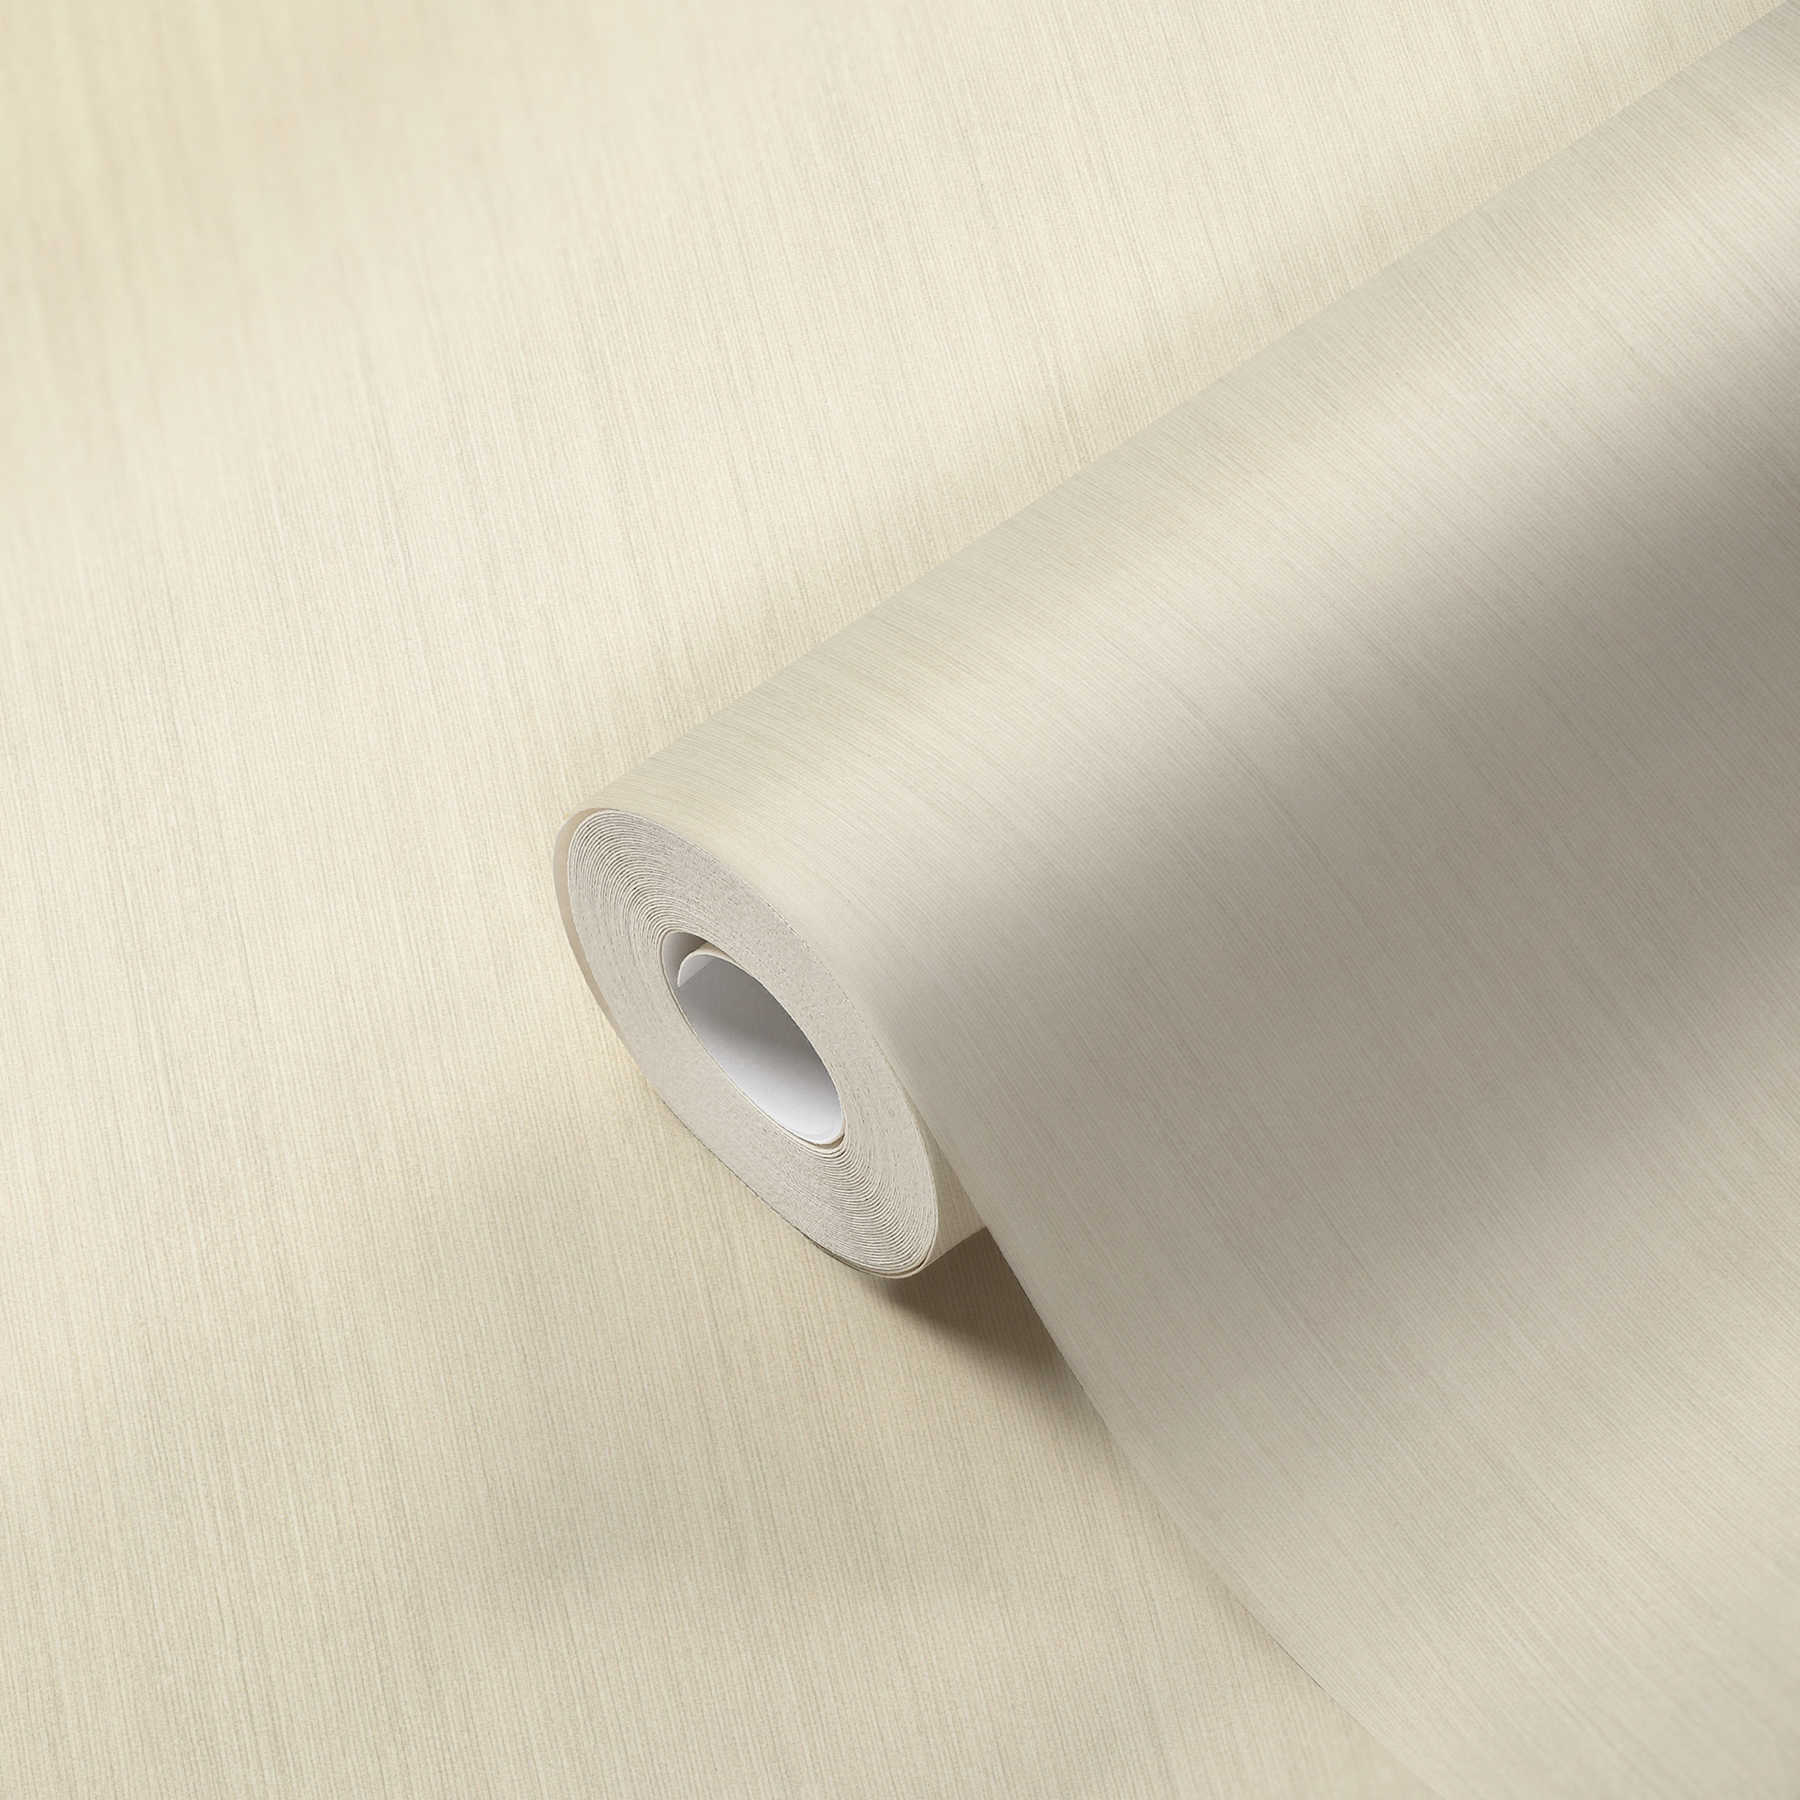             Eenheidsbehang crème-beige met reliëfpatroon & mat oppervlak
        